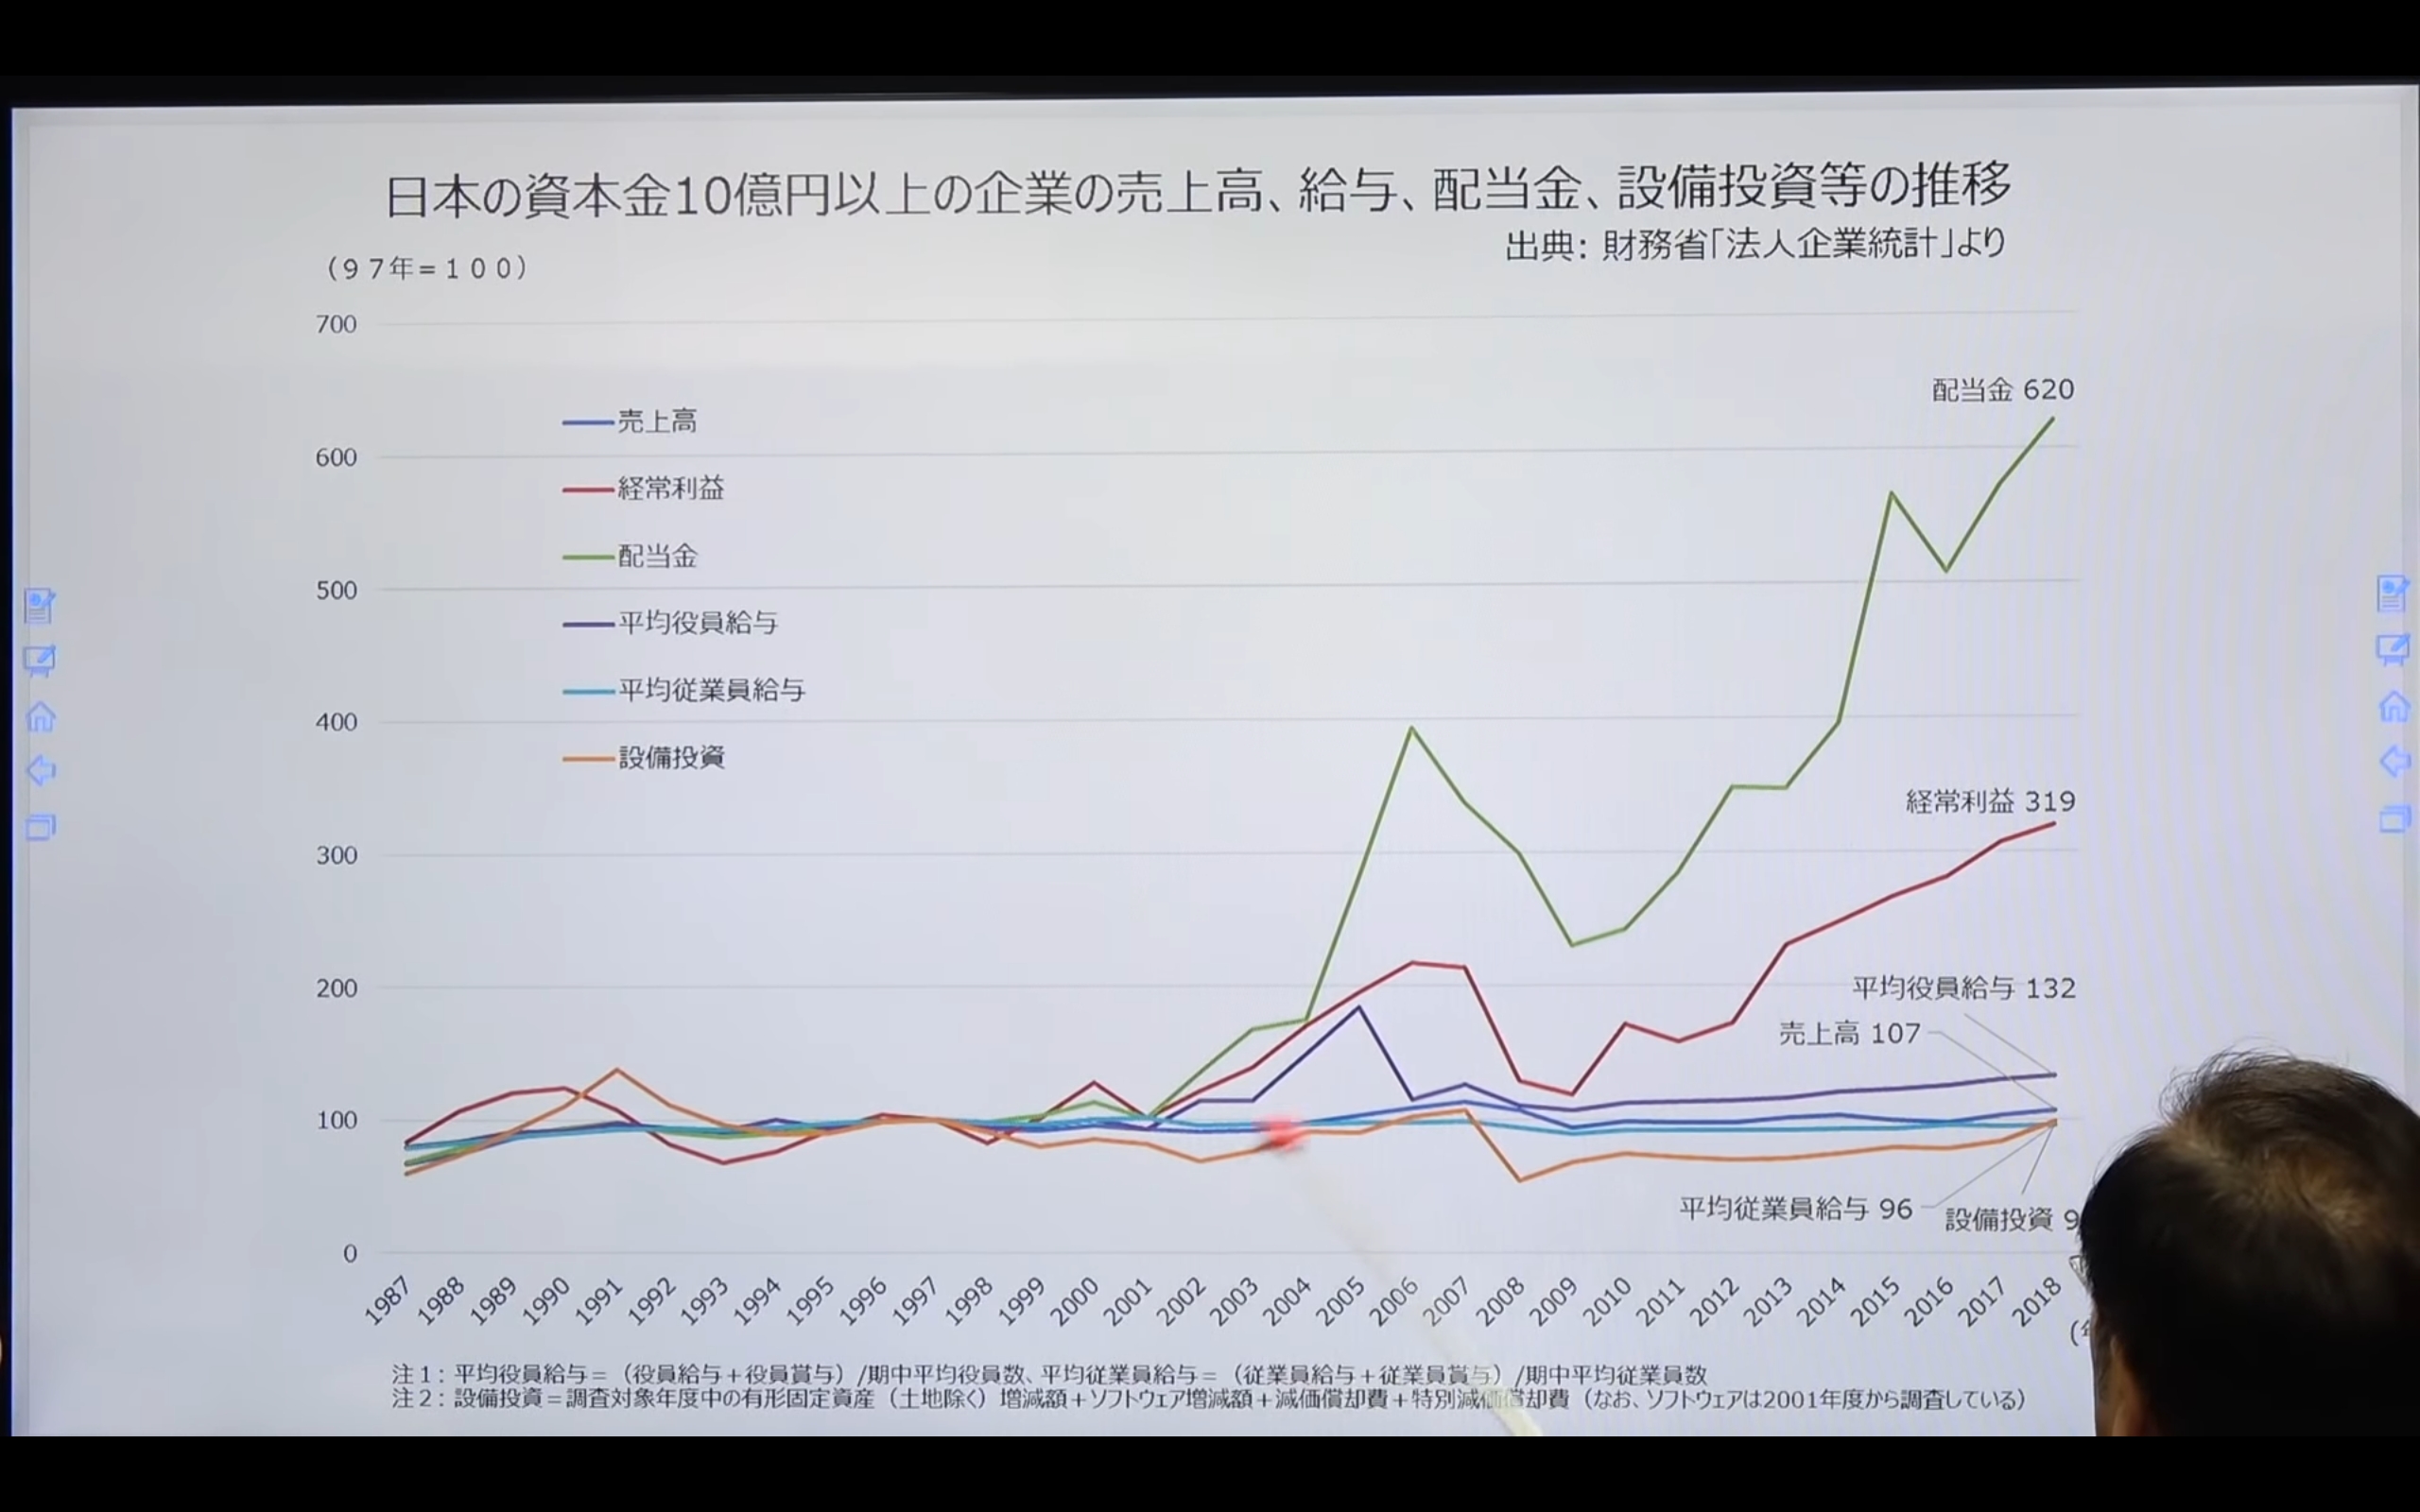 グラフ　日本の資本金10憶円以上の企業の売上高、給与、配当金、設備投資等の推移